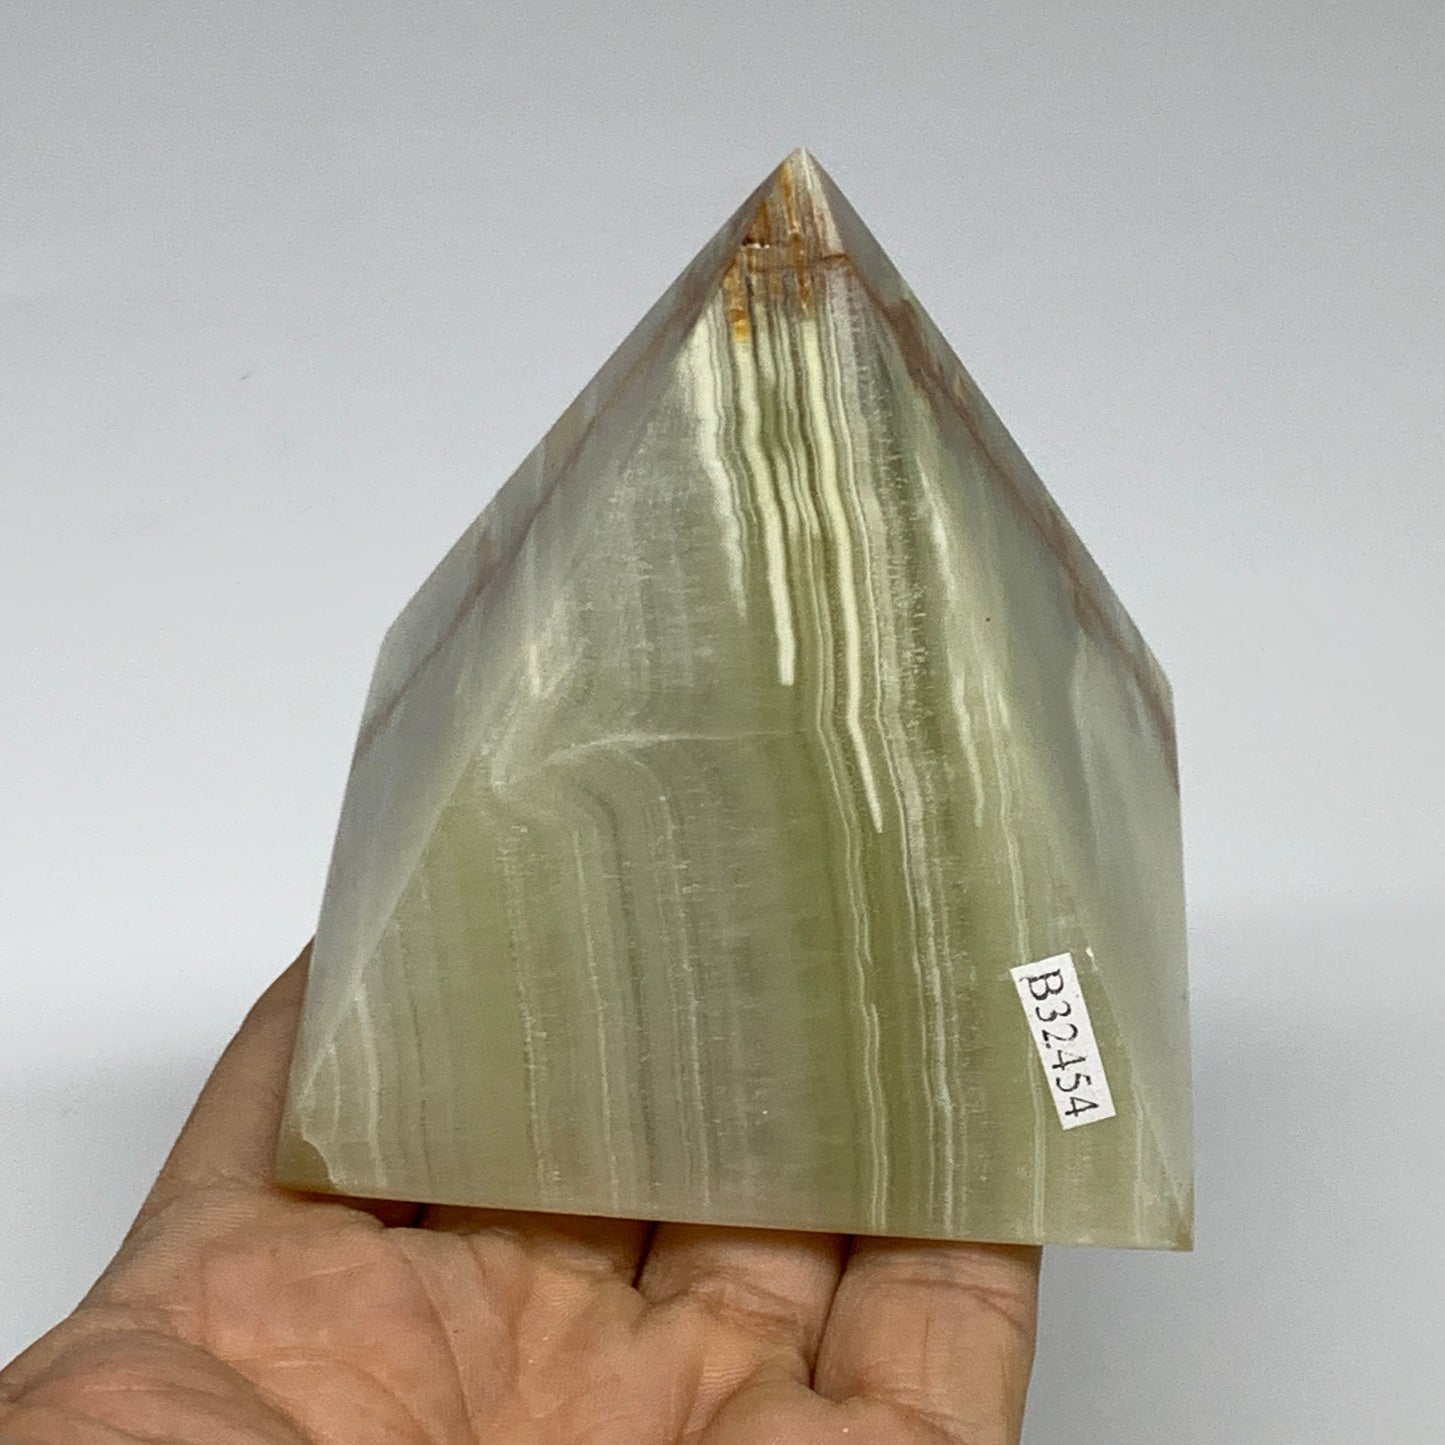 0.92 lbs, 3"x2.9"x2.9", Green Onyx Pyramid Gemstone Crystal, B32454